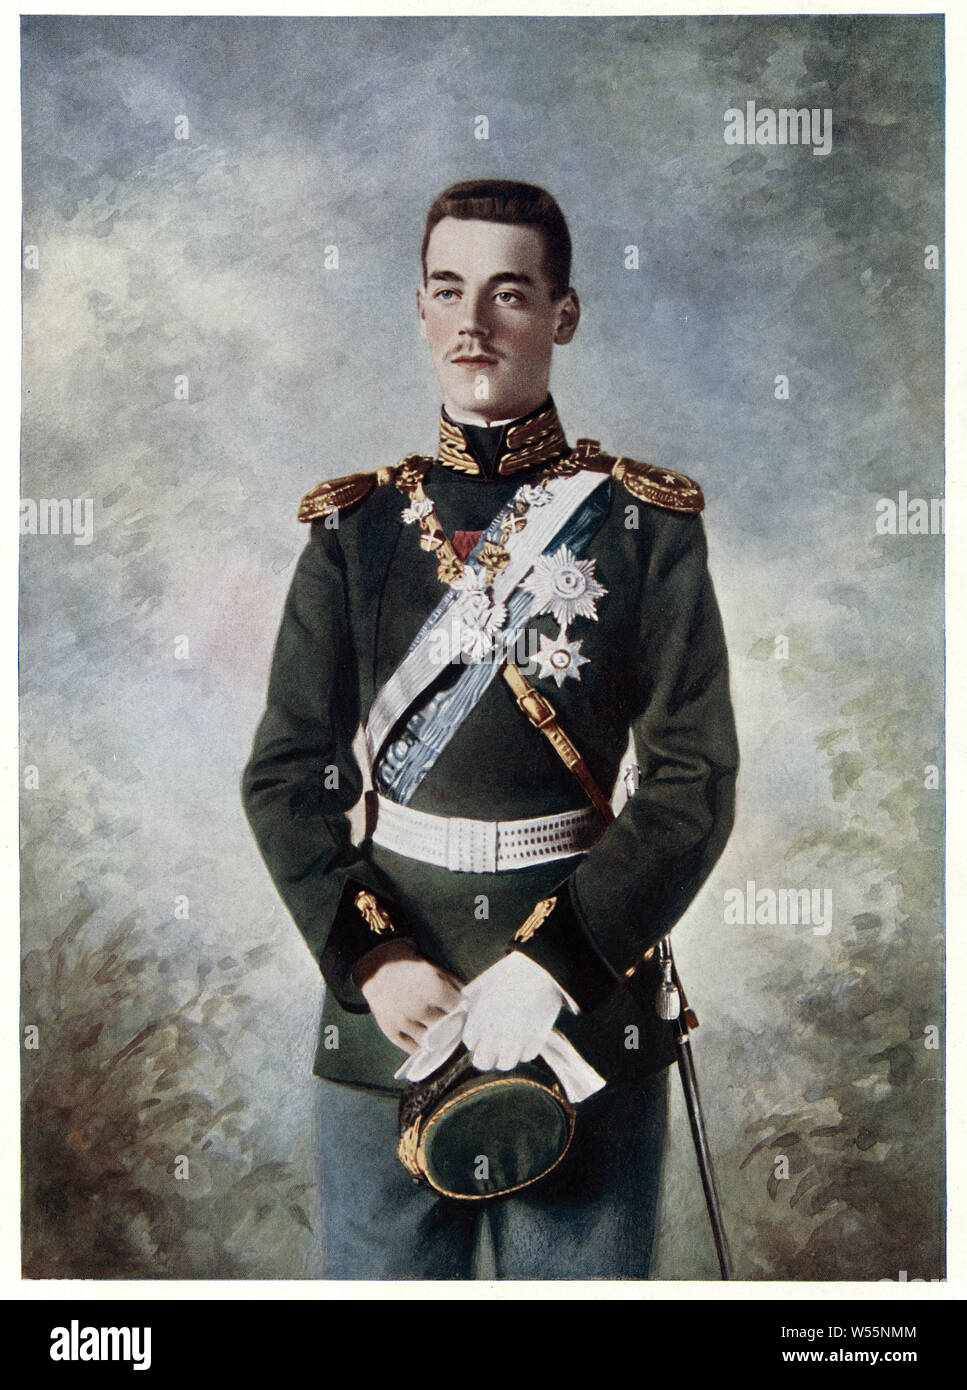 Il Granduca Michael Alexandrovich di Russia il figlio più giovane e quinto figlio dell'Imperatore Alessandro III di Russia e il fratello più giovane di Nicholas II. Foto Stock